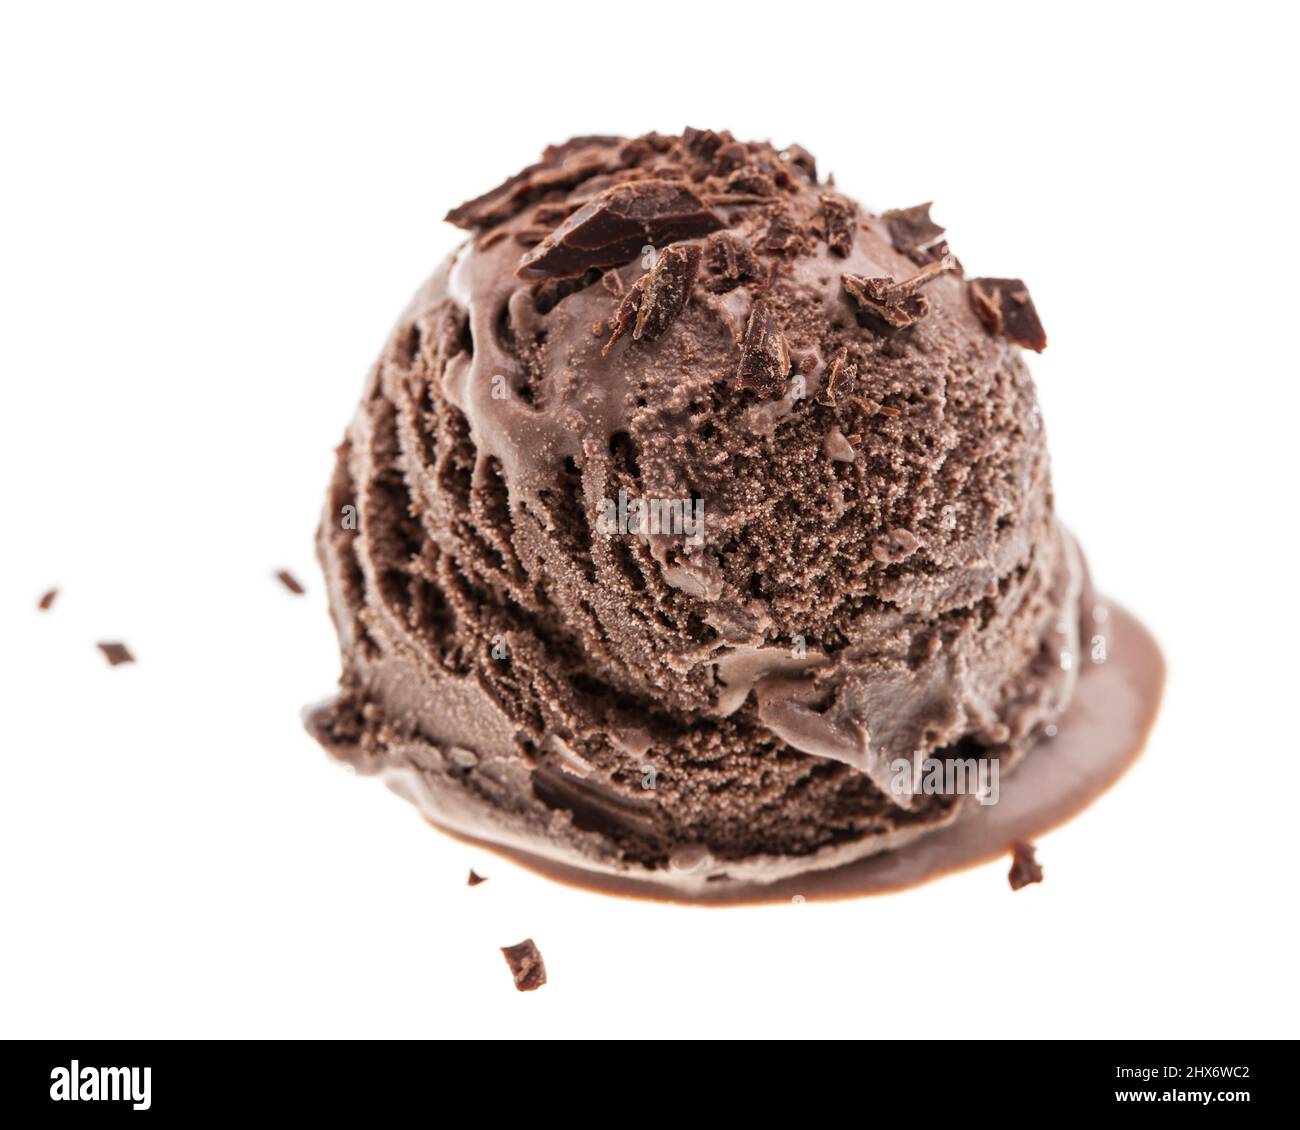 paletta singola per gelato al cioccolato fondente con spruzzette di cioccolato laterali Foto Stock